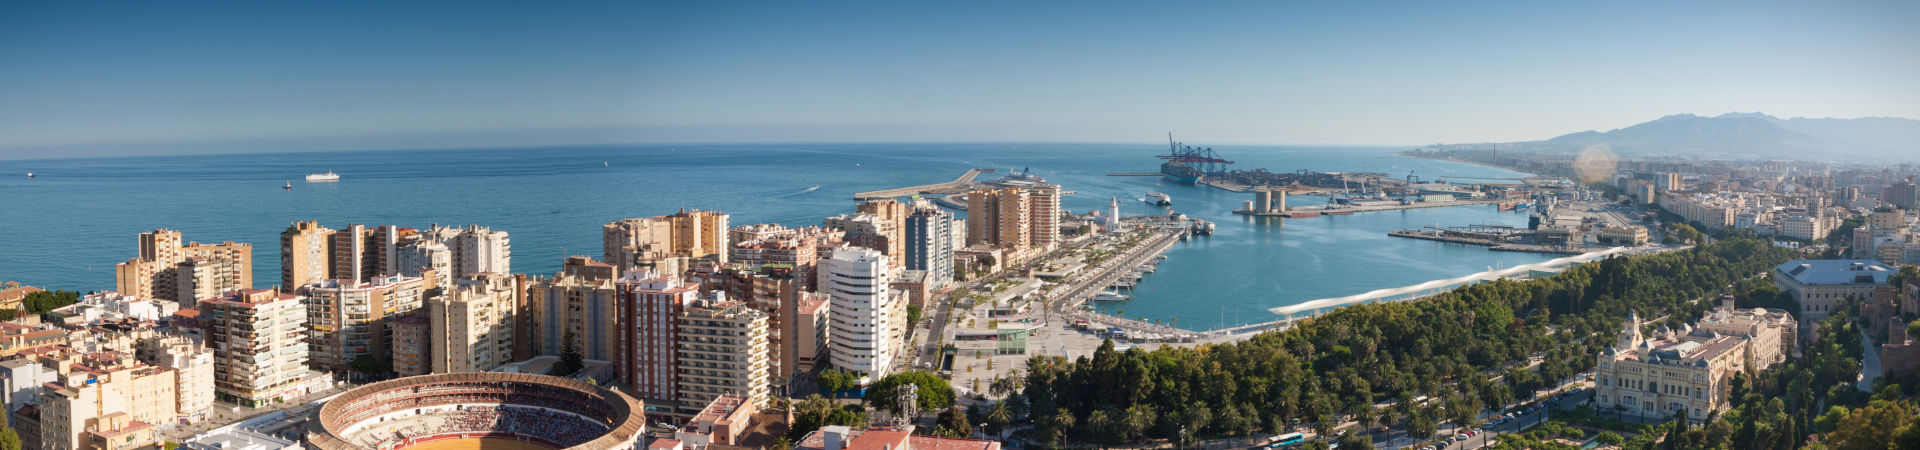 Image ressource du port de destination Malaga pour l'itinéraire du ferry Melilla - Malaga